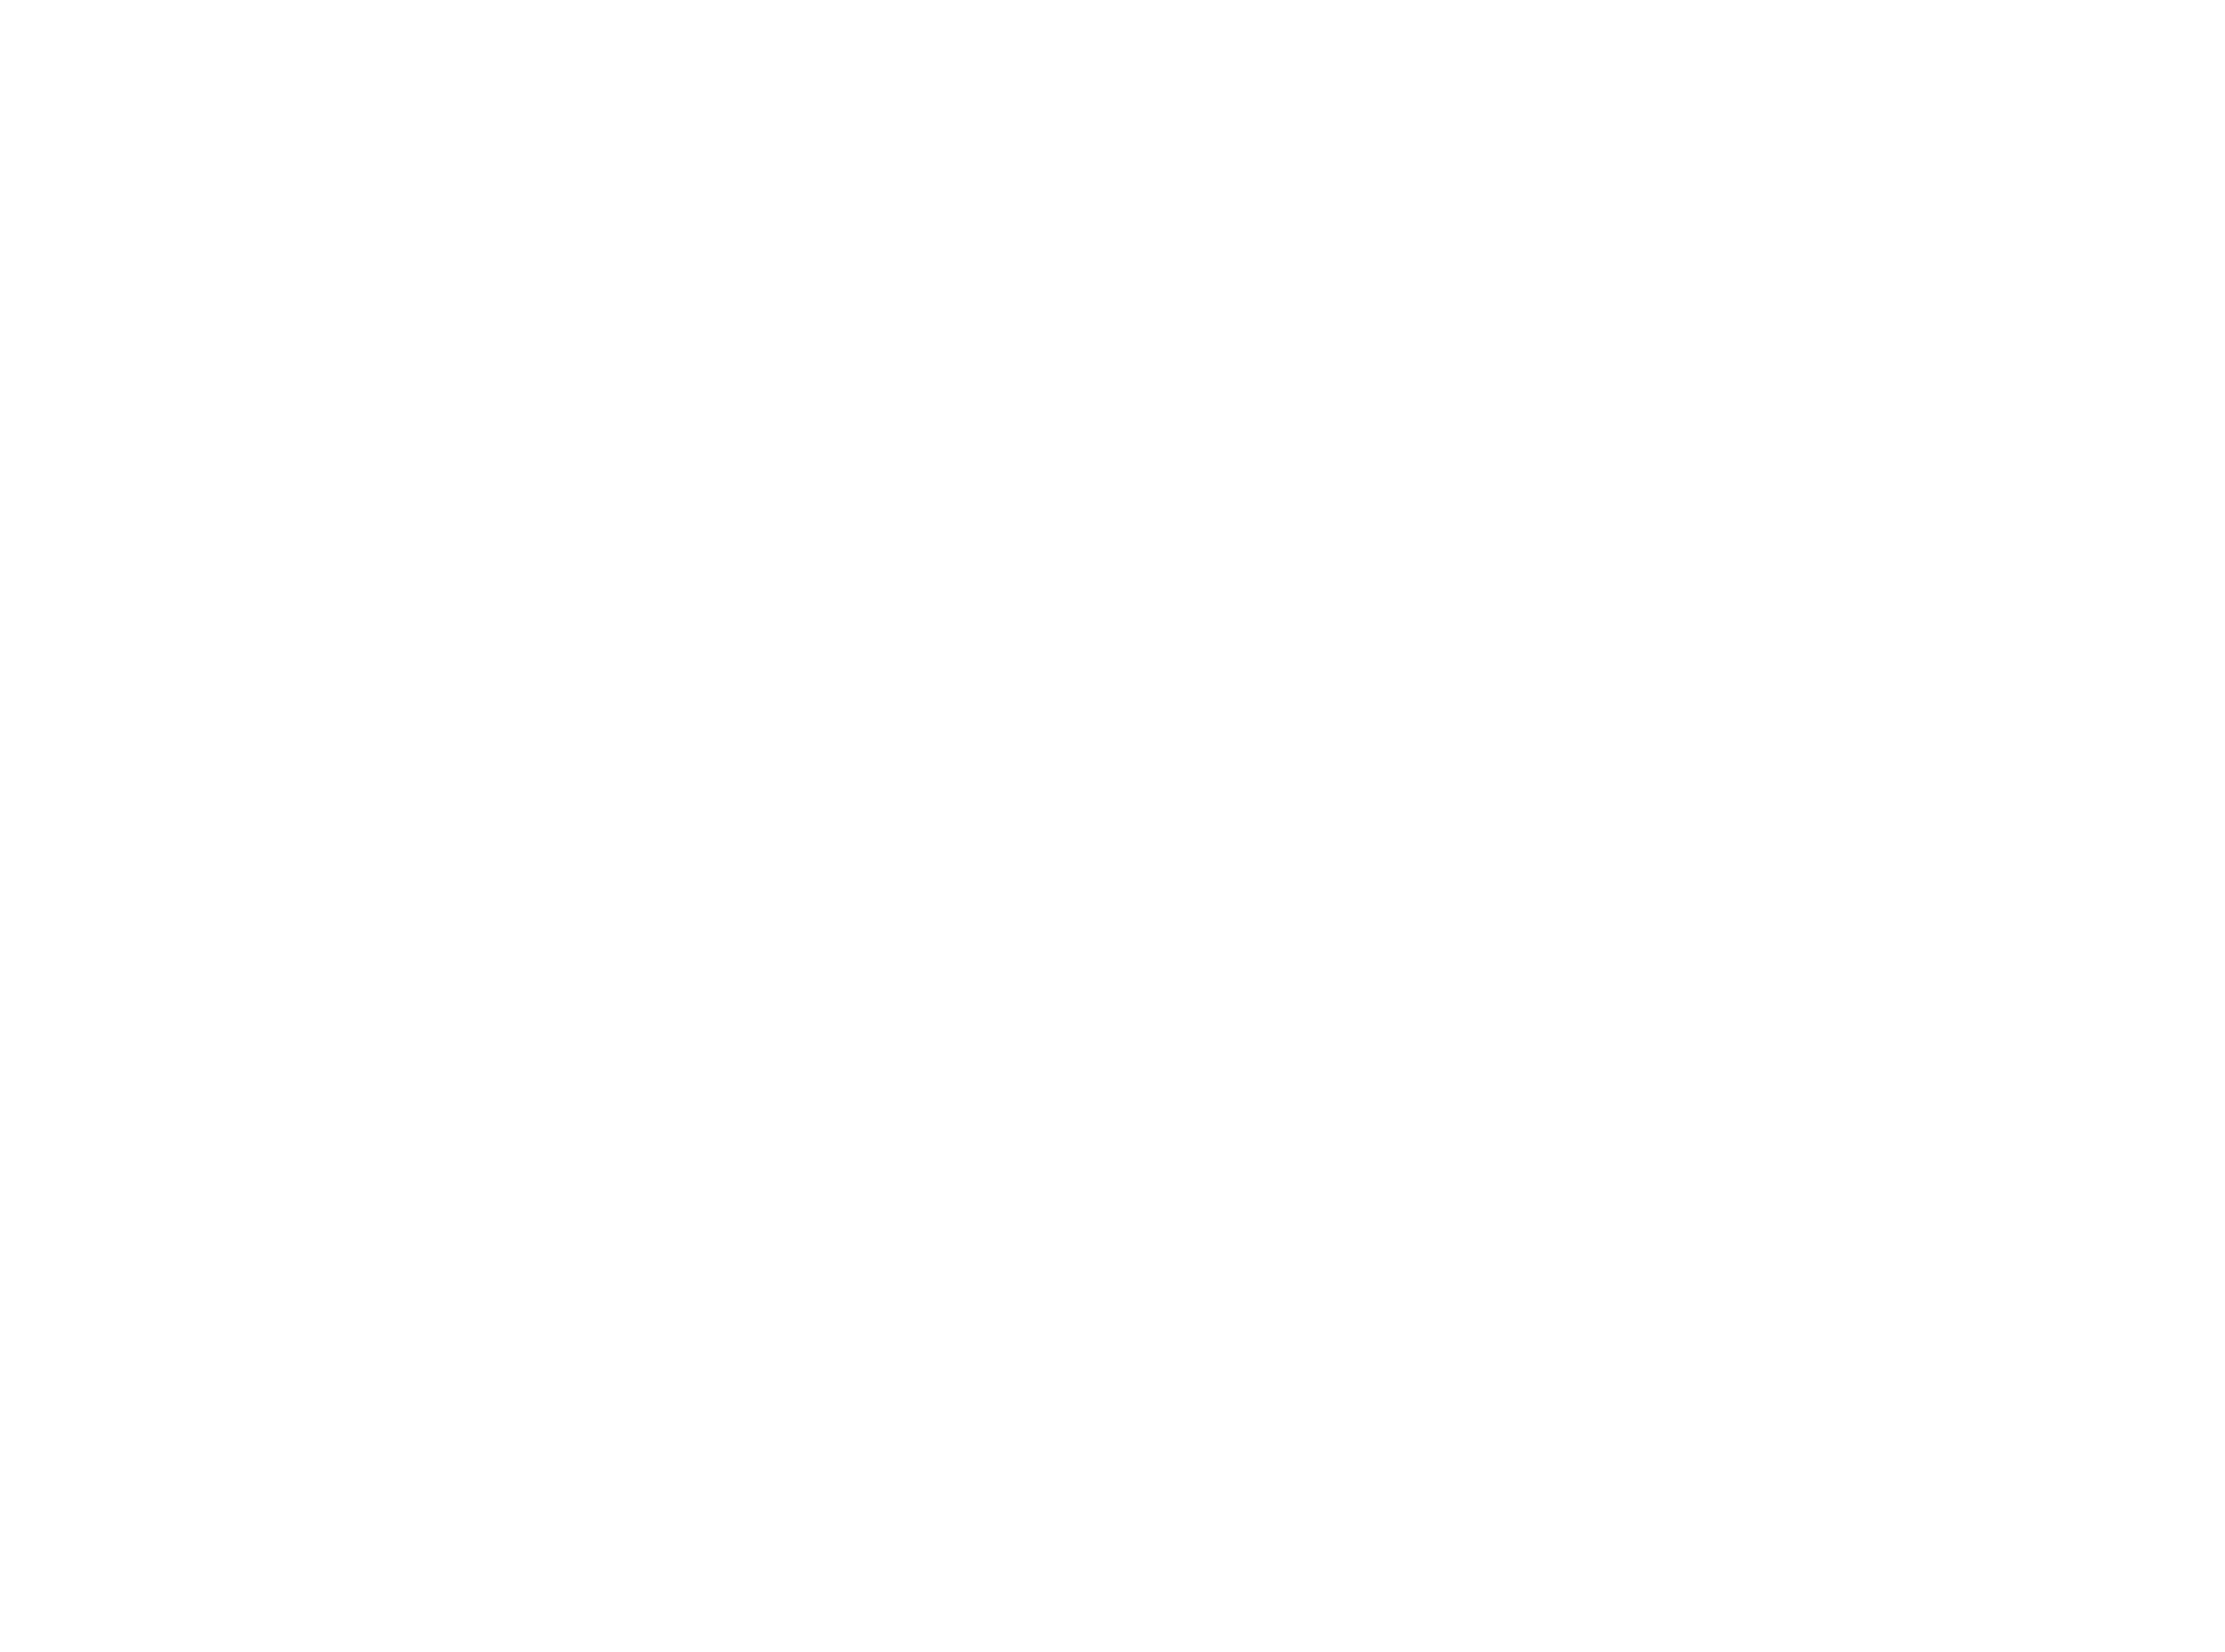 Bang Bang Noosa